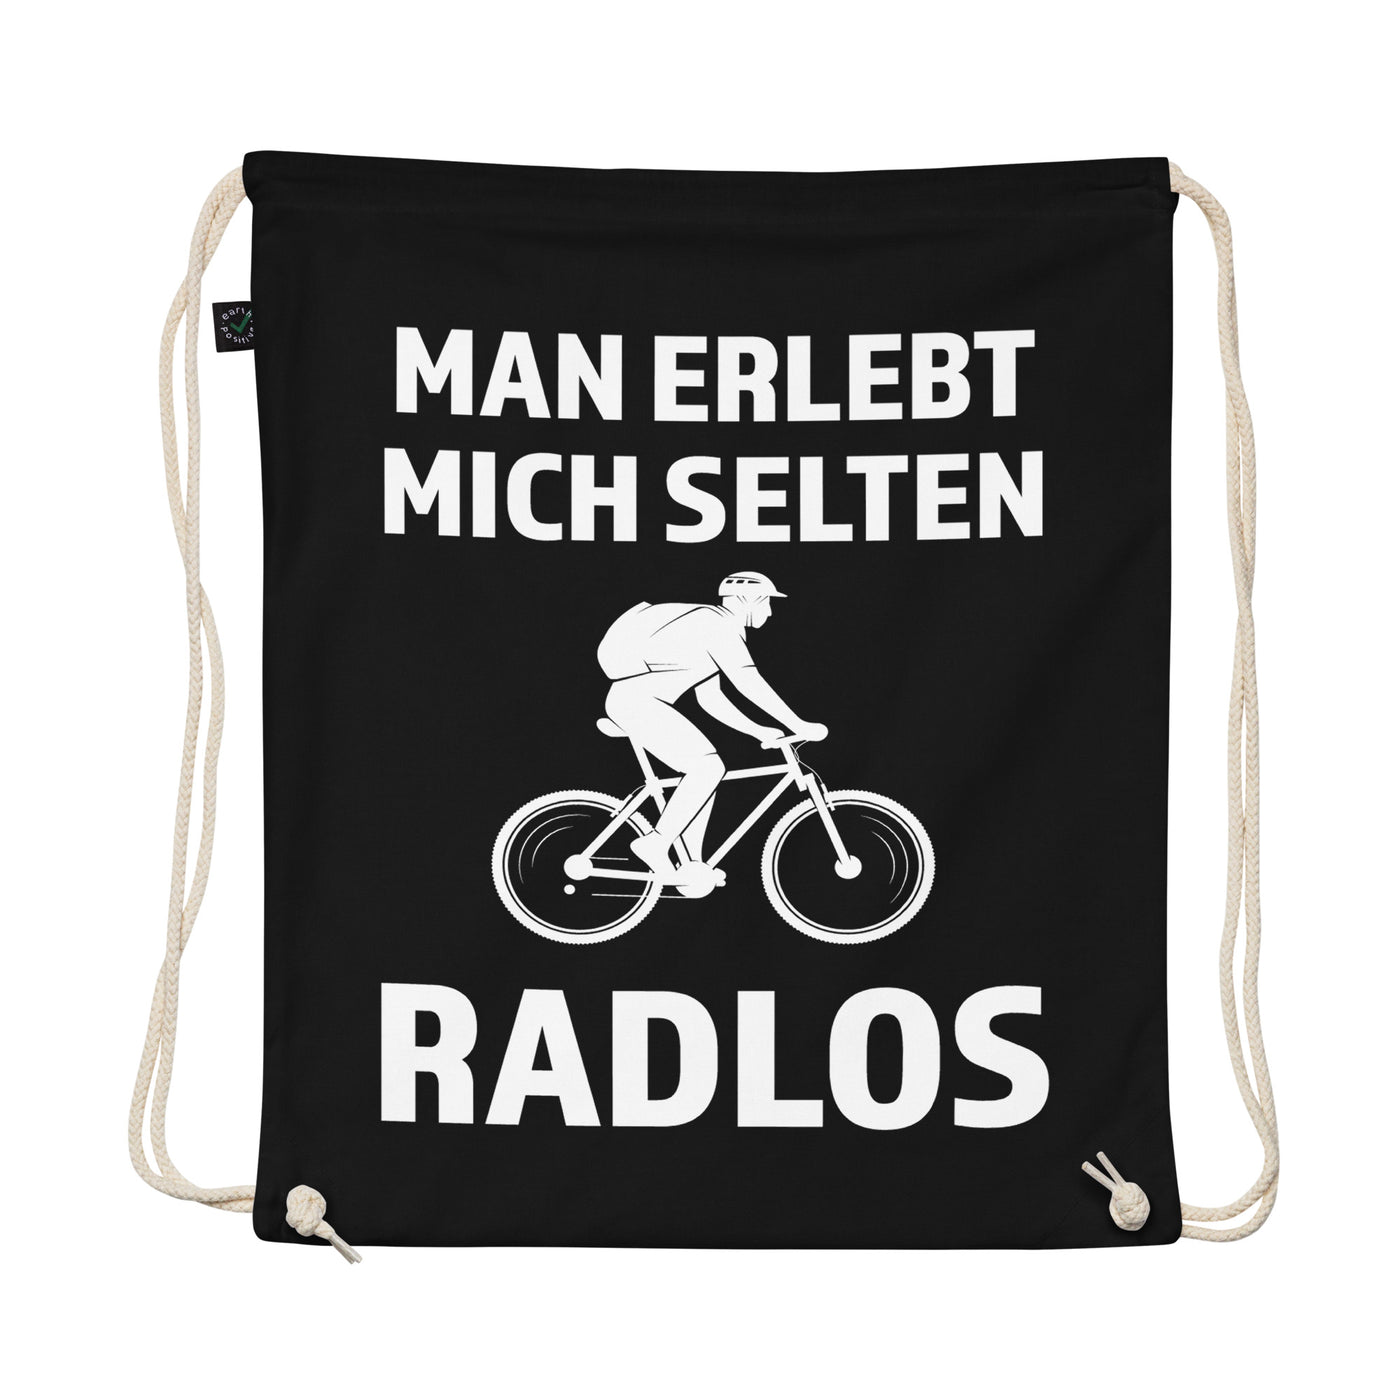 Man Erlebt Mich Selten Radlos - Organic Turnbeutel fahrrad mountainbike Schwarz